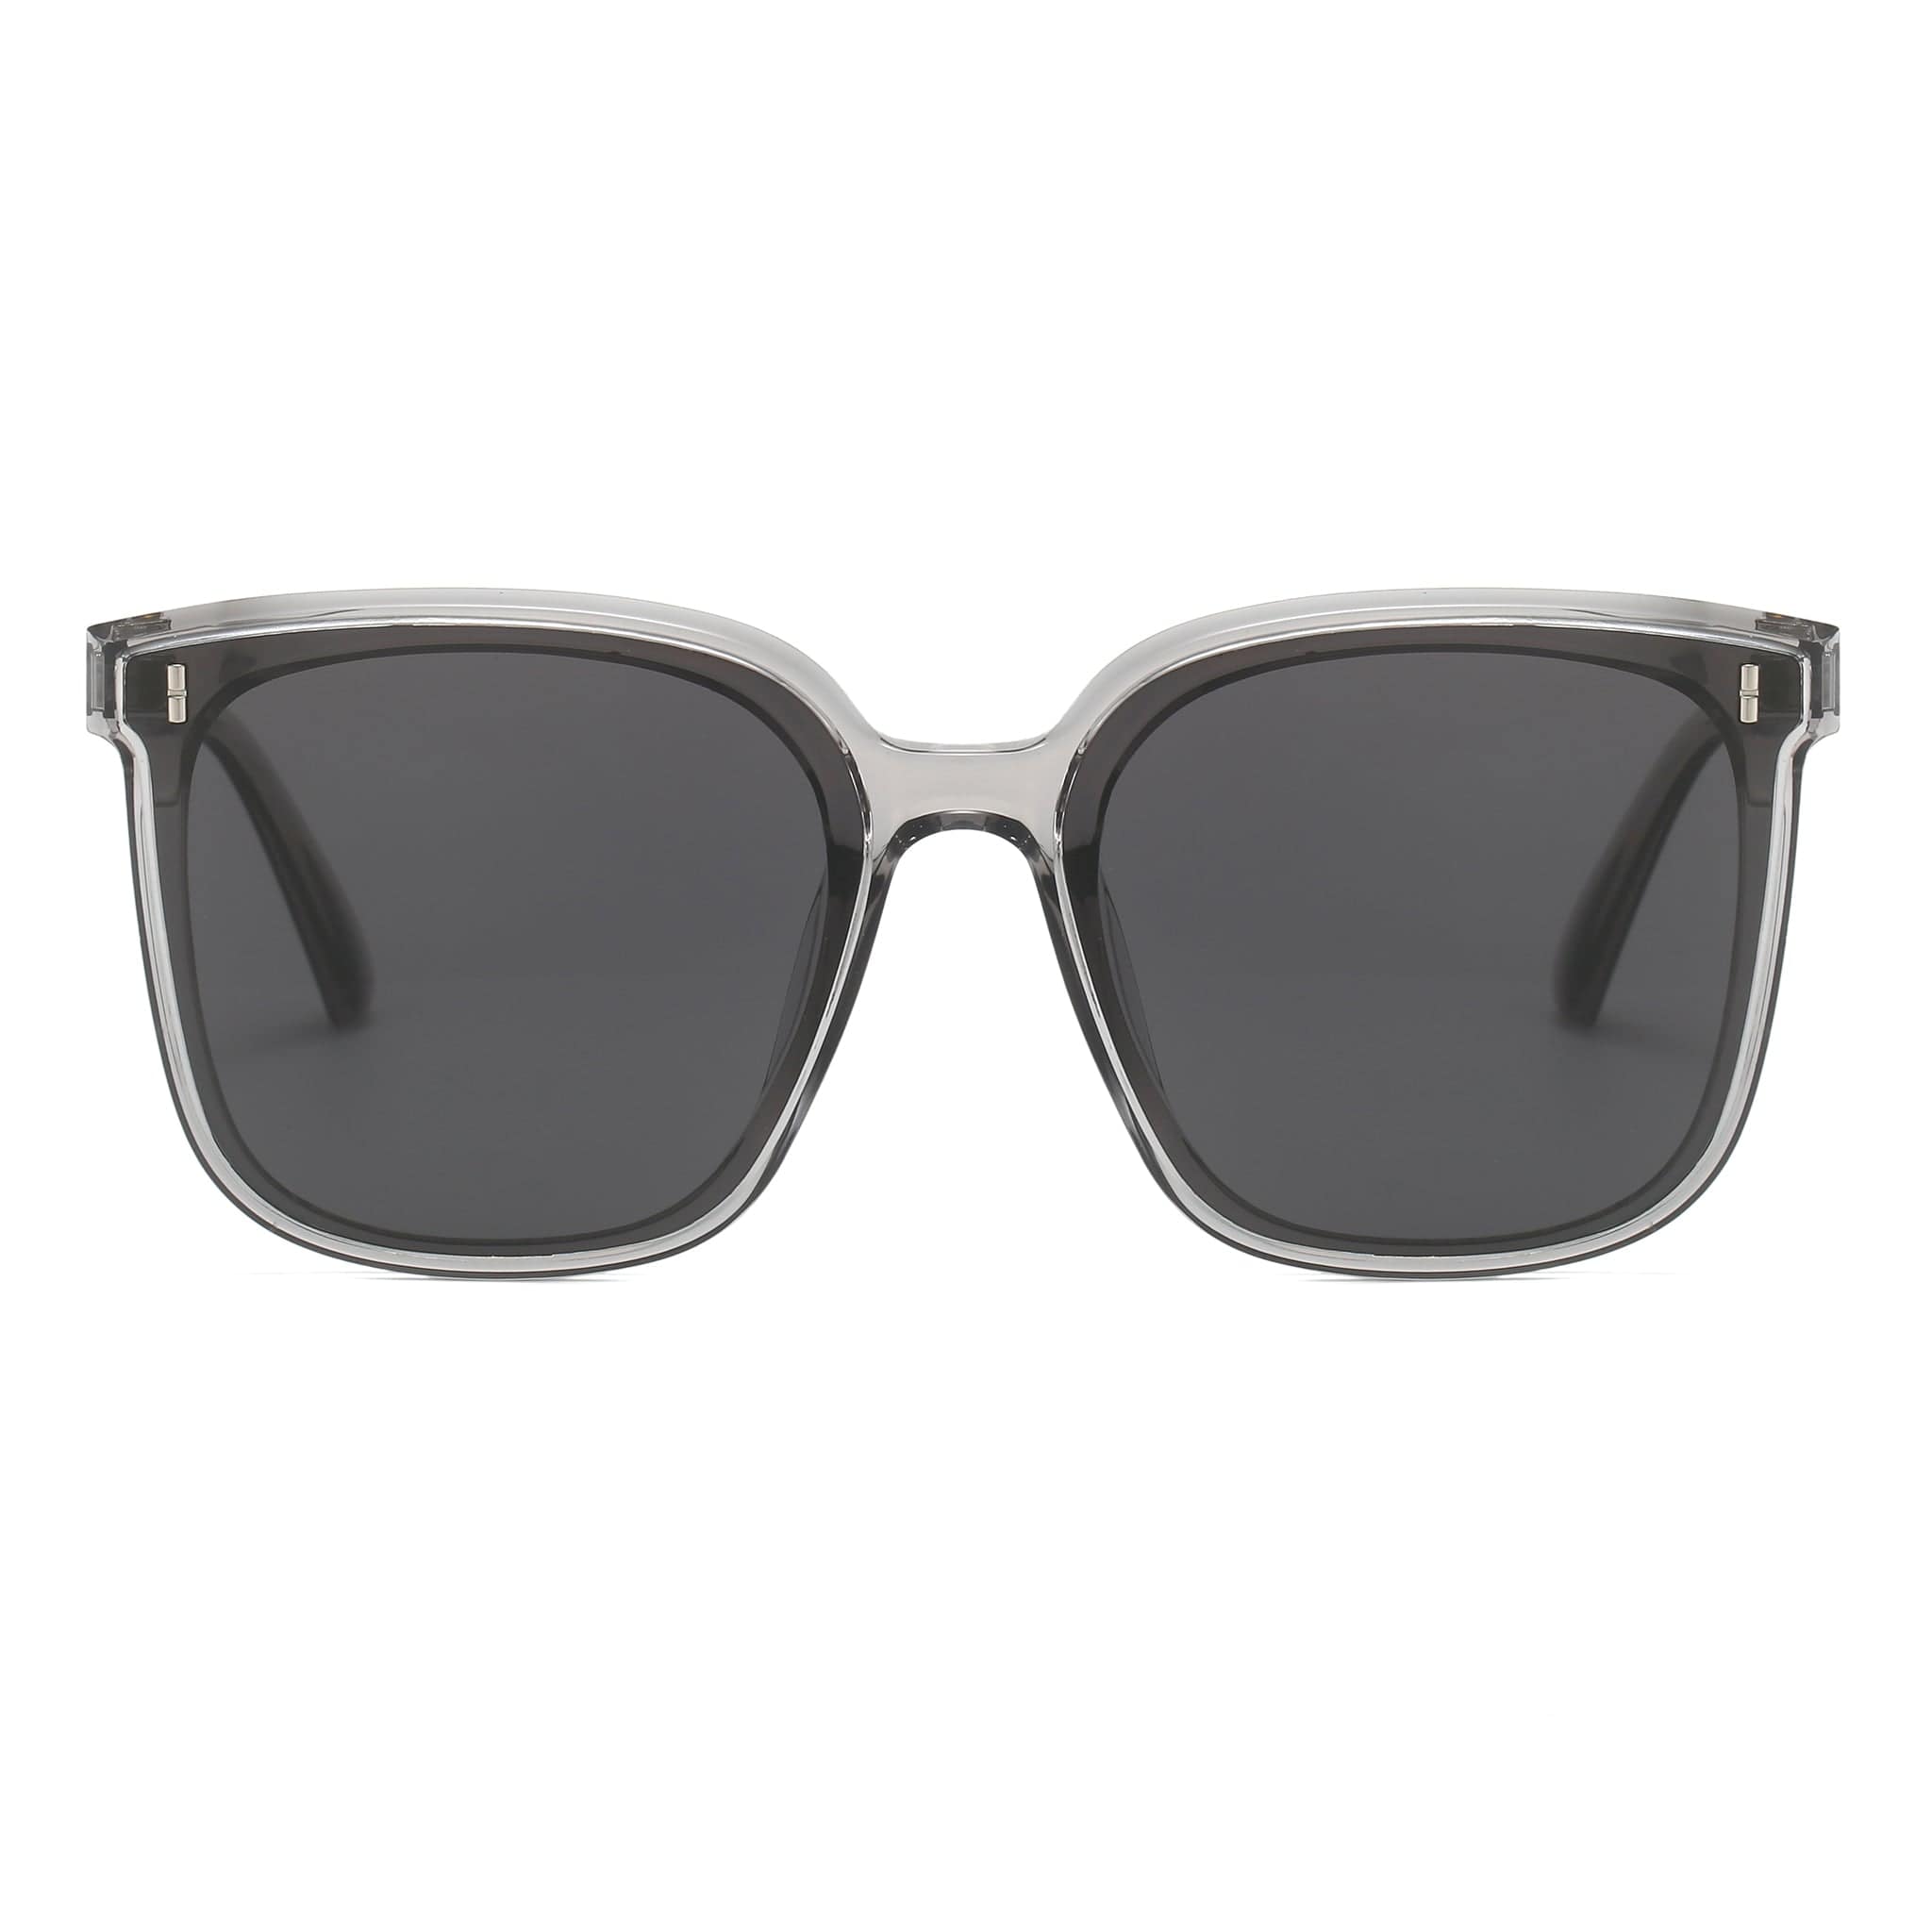 GIUSTIZIERI VECCHI Sunglasses Medium / Sea Glass Grey Dolce Passione Duo